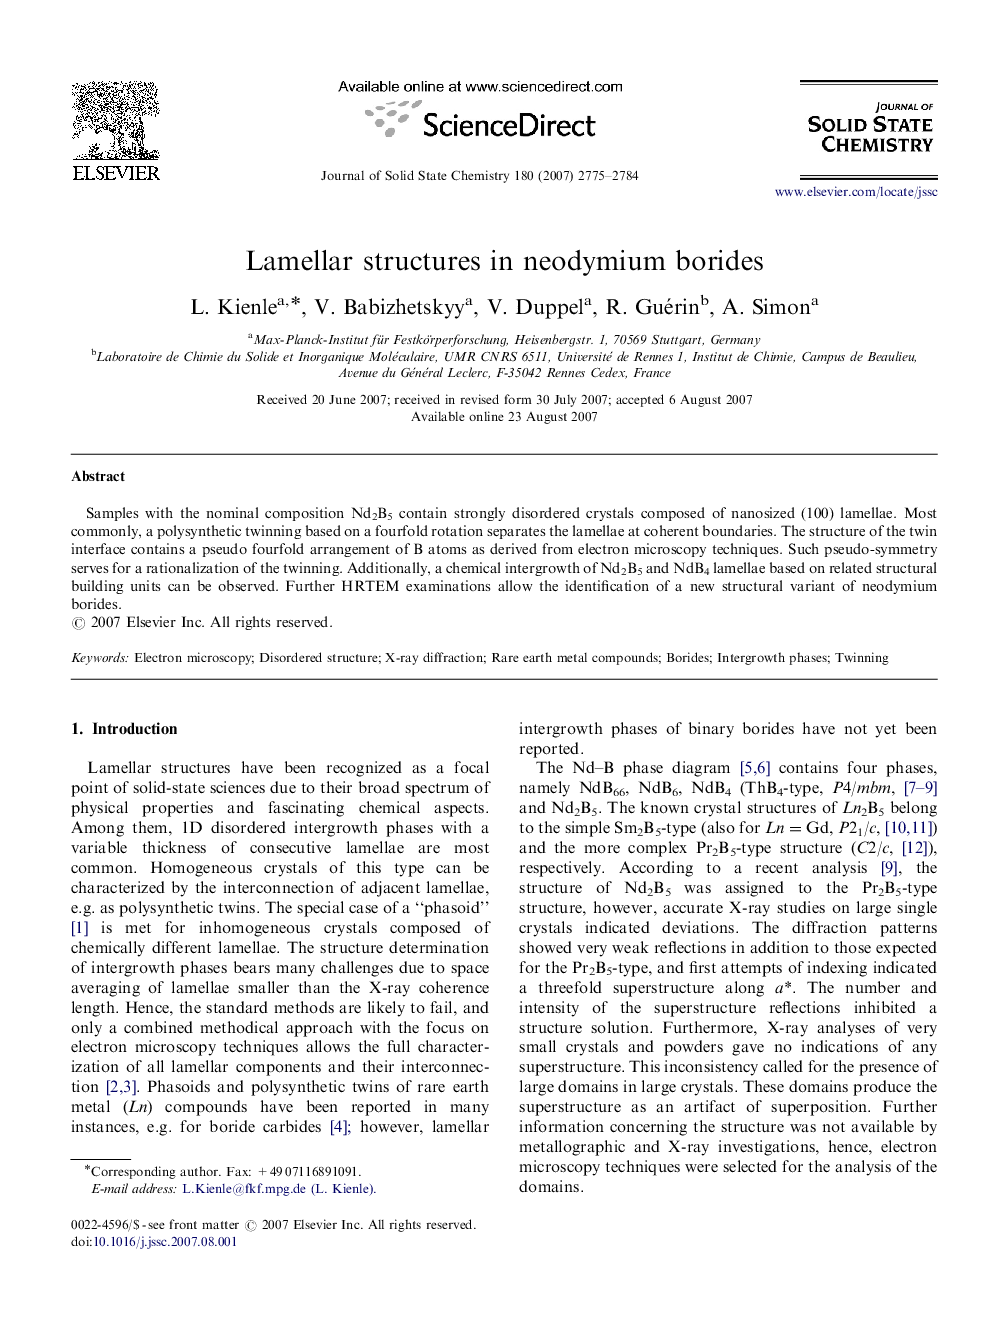 Lamellar structures in neodymium borides